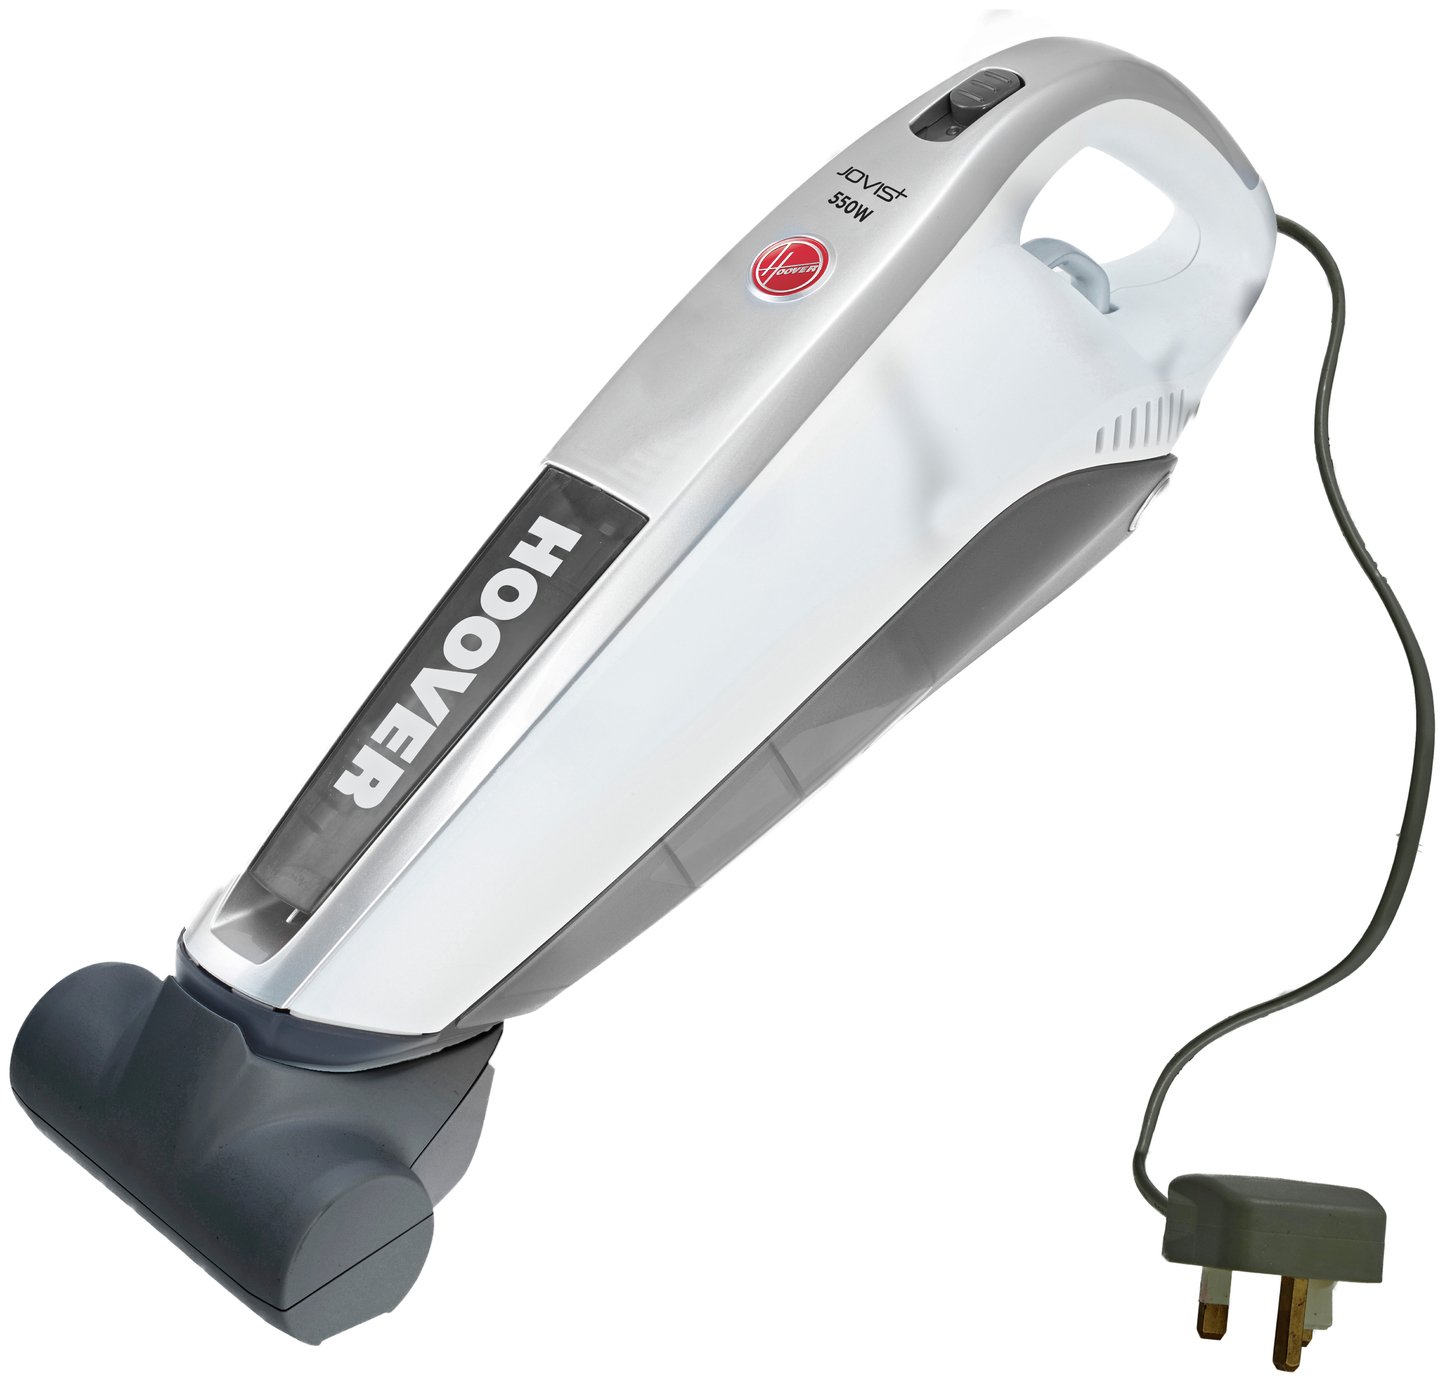 Hoover SM550AC Jovis + Pet Corded Handheld Vacuum Cleaner